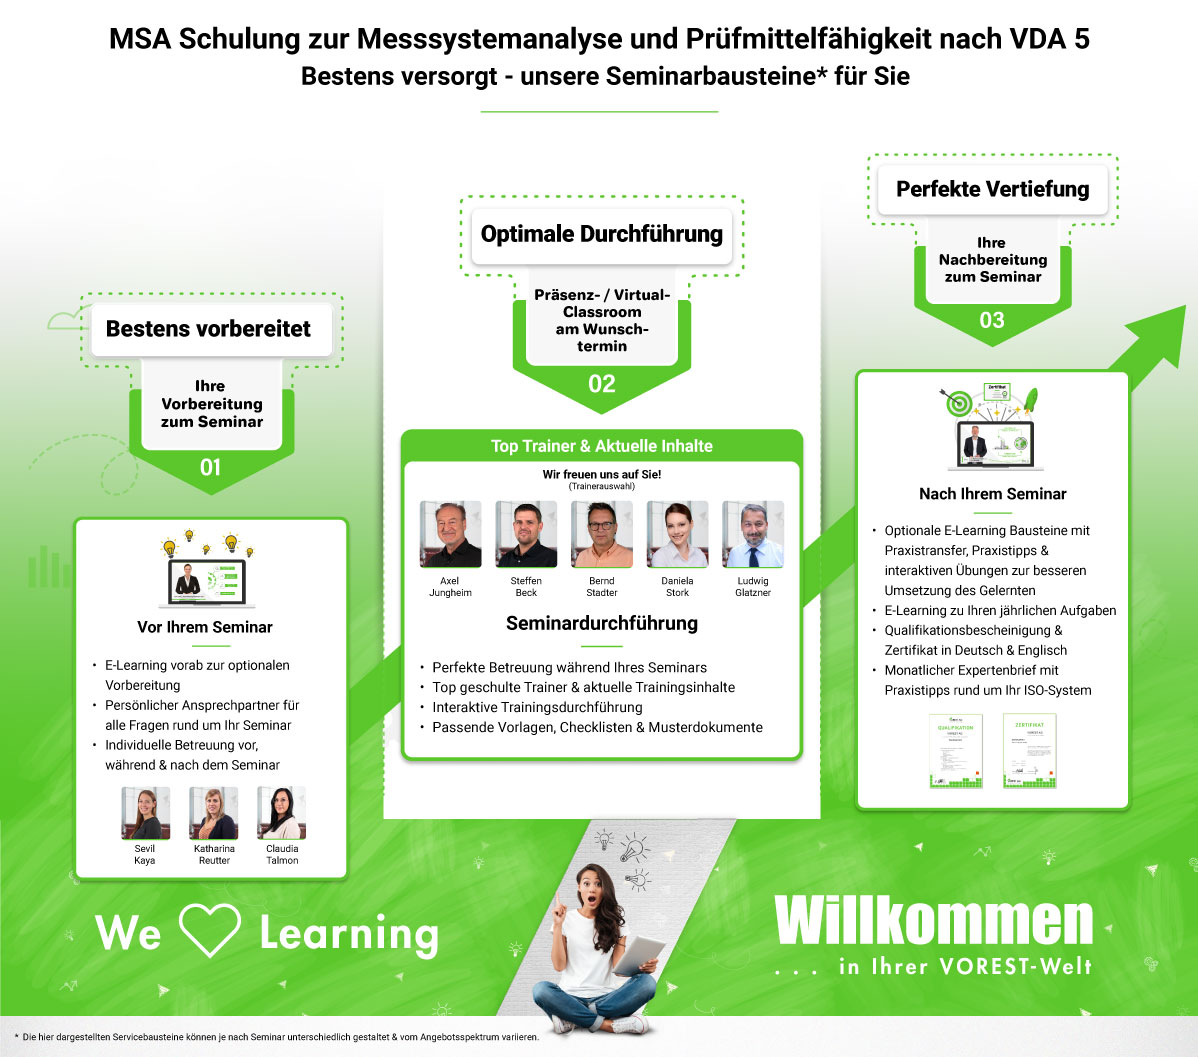 MSA Schulung zur Messsystemanalyse und Prüfmittelfähigkeit nach VDA 5